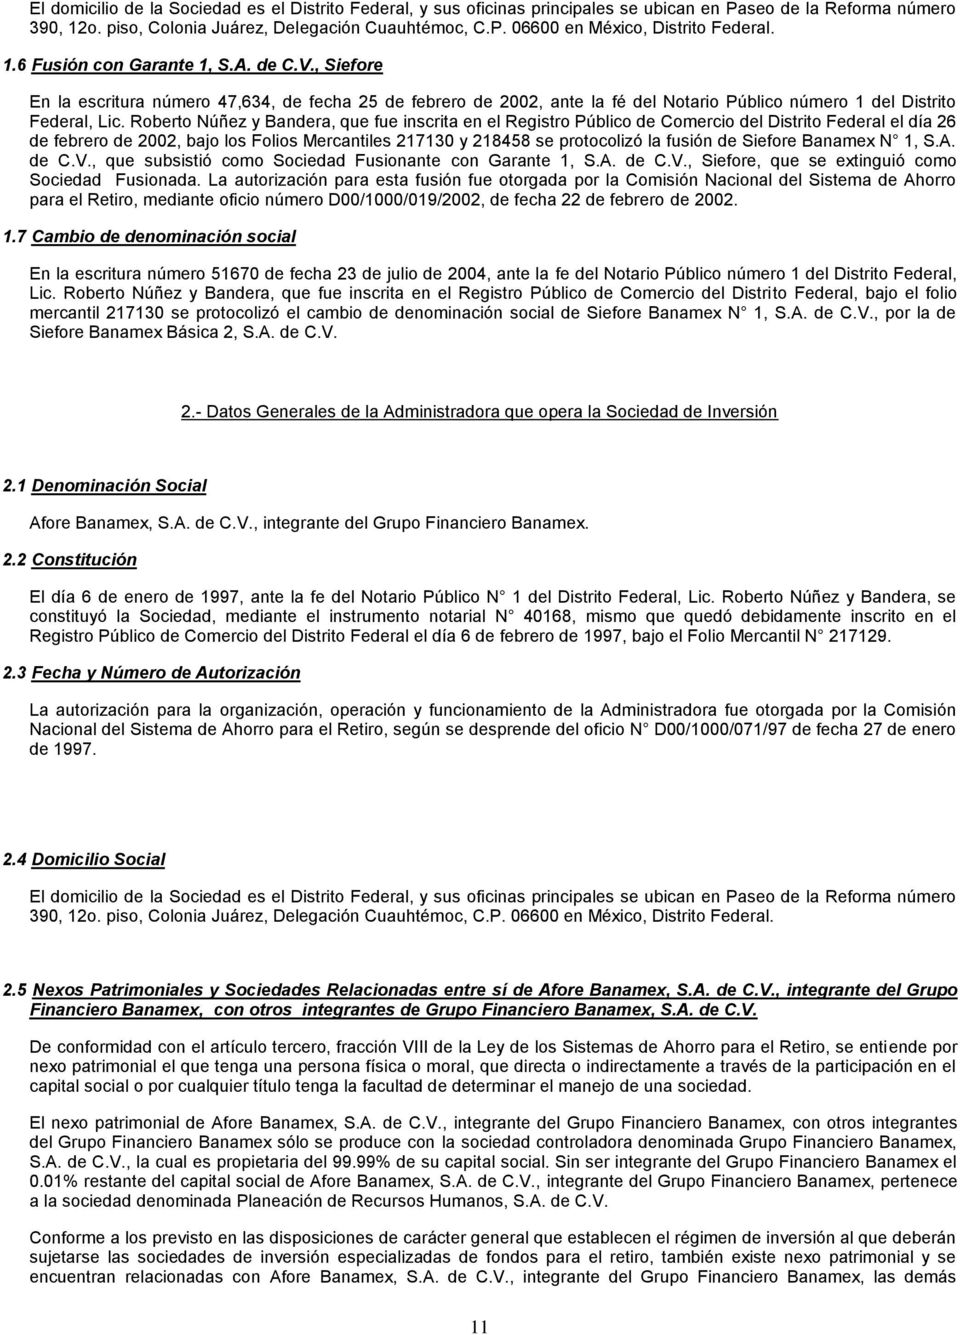 Roberto Núñez y Bandera, que fue inscrita en el Registro Público de Comercio del Distrito Federal el día 26 de febrero de 2002, bajo los Folios Mercantiles 217130 y 218458 se protocolizó la fusión de